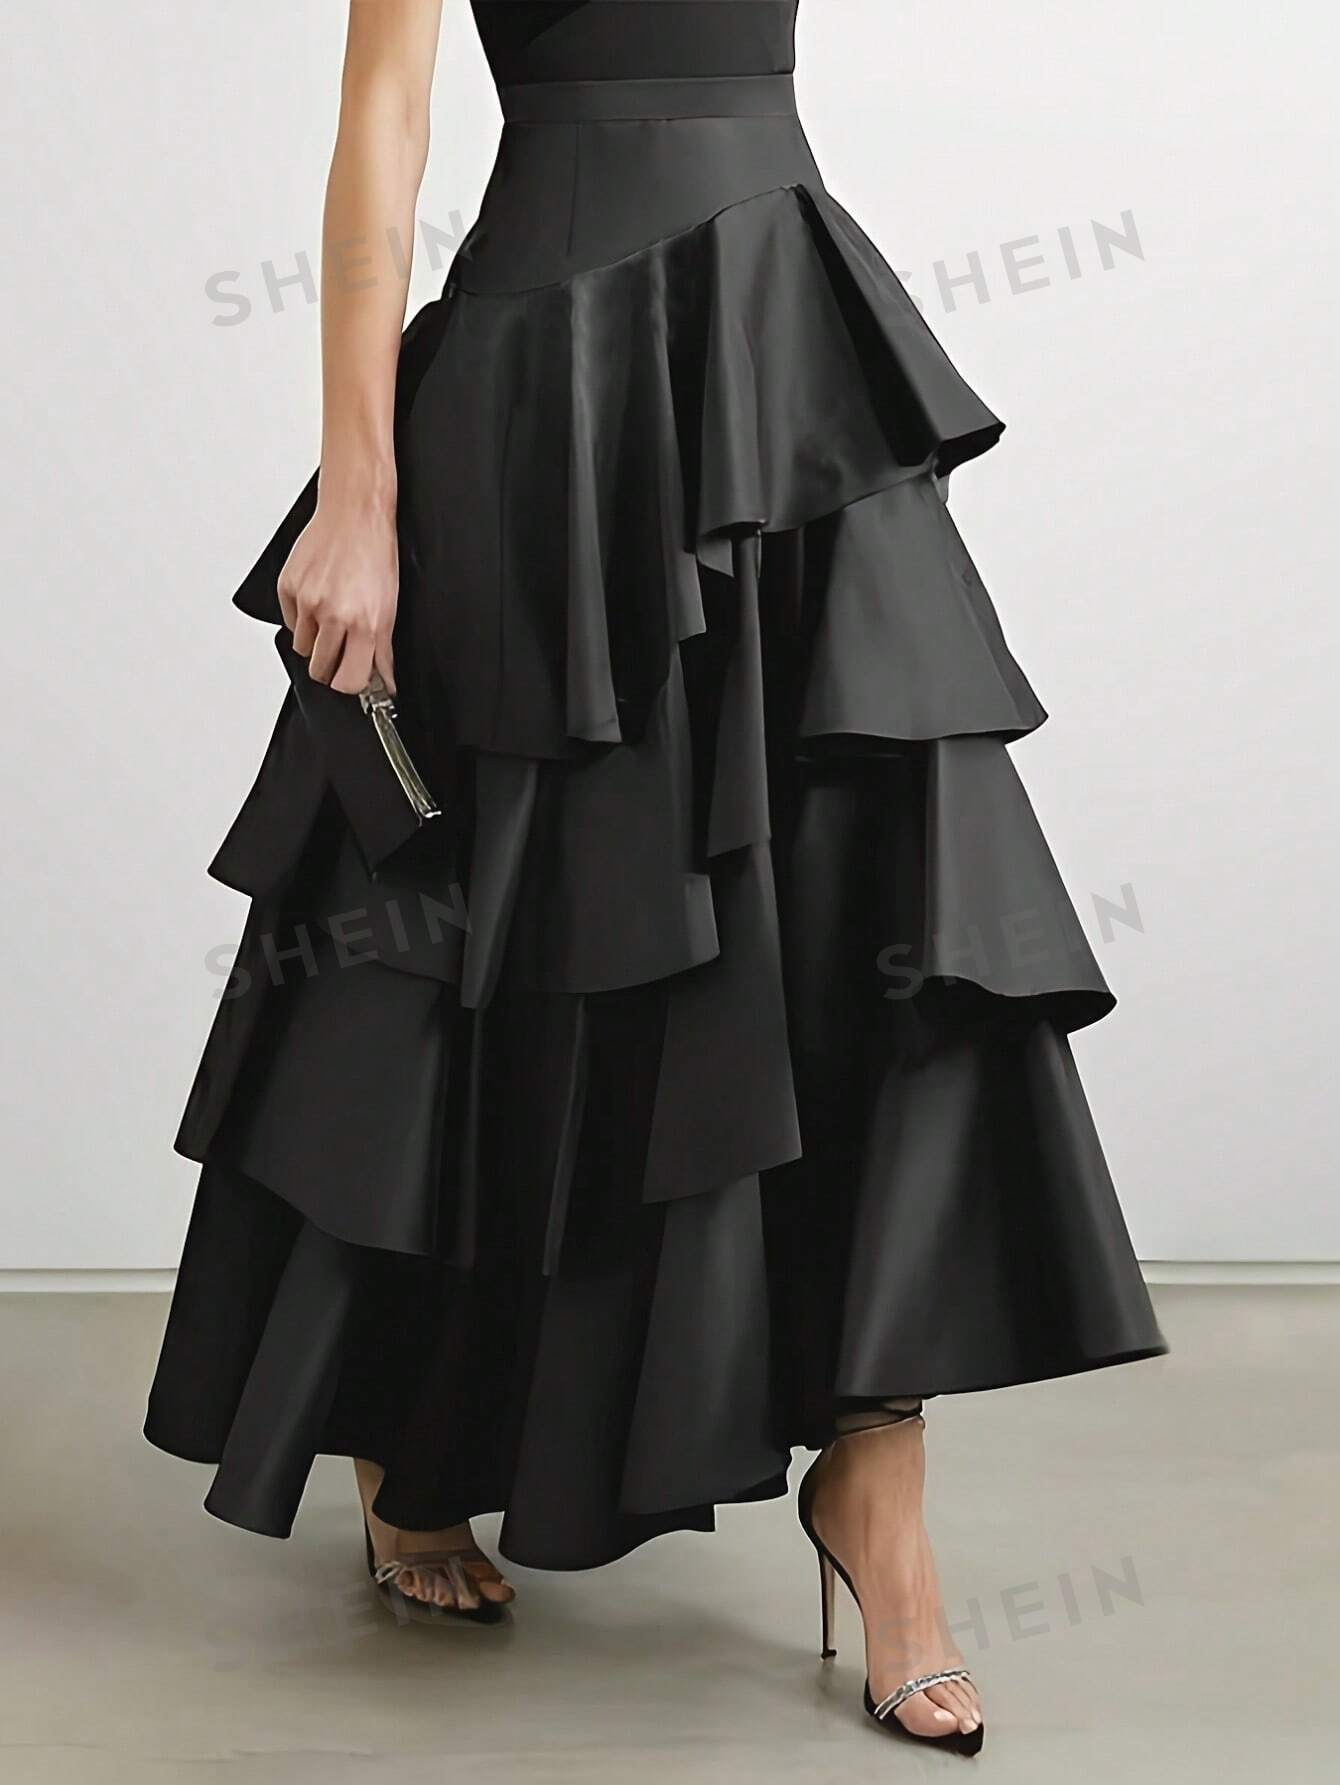 SHEIN Privé Однотонная многослойная юбка-миди с рюшами, черный shein mod белая кружевная декорированная асимметричная юбка с рюшами по подолу белый